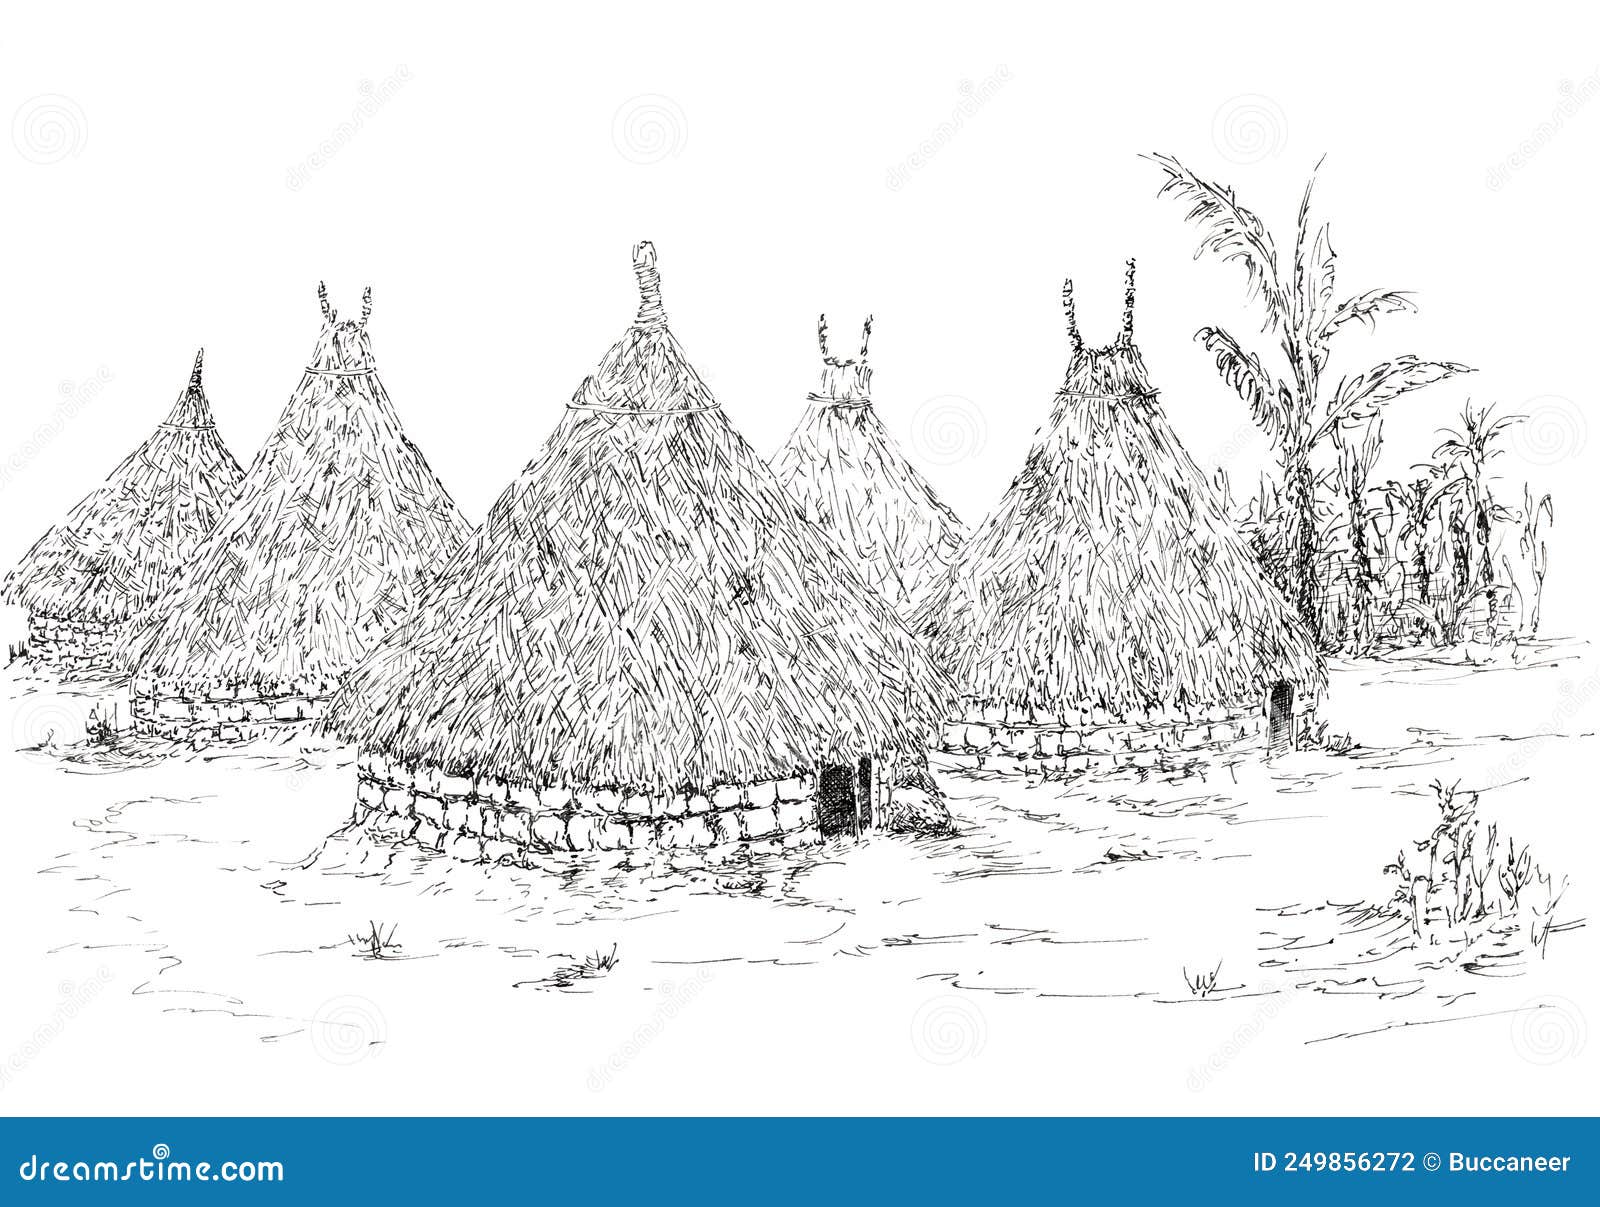 kogi peoples village